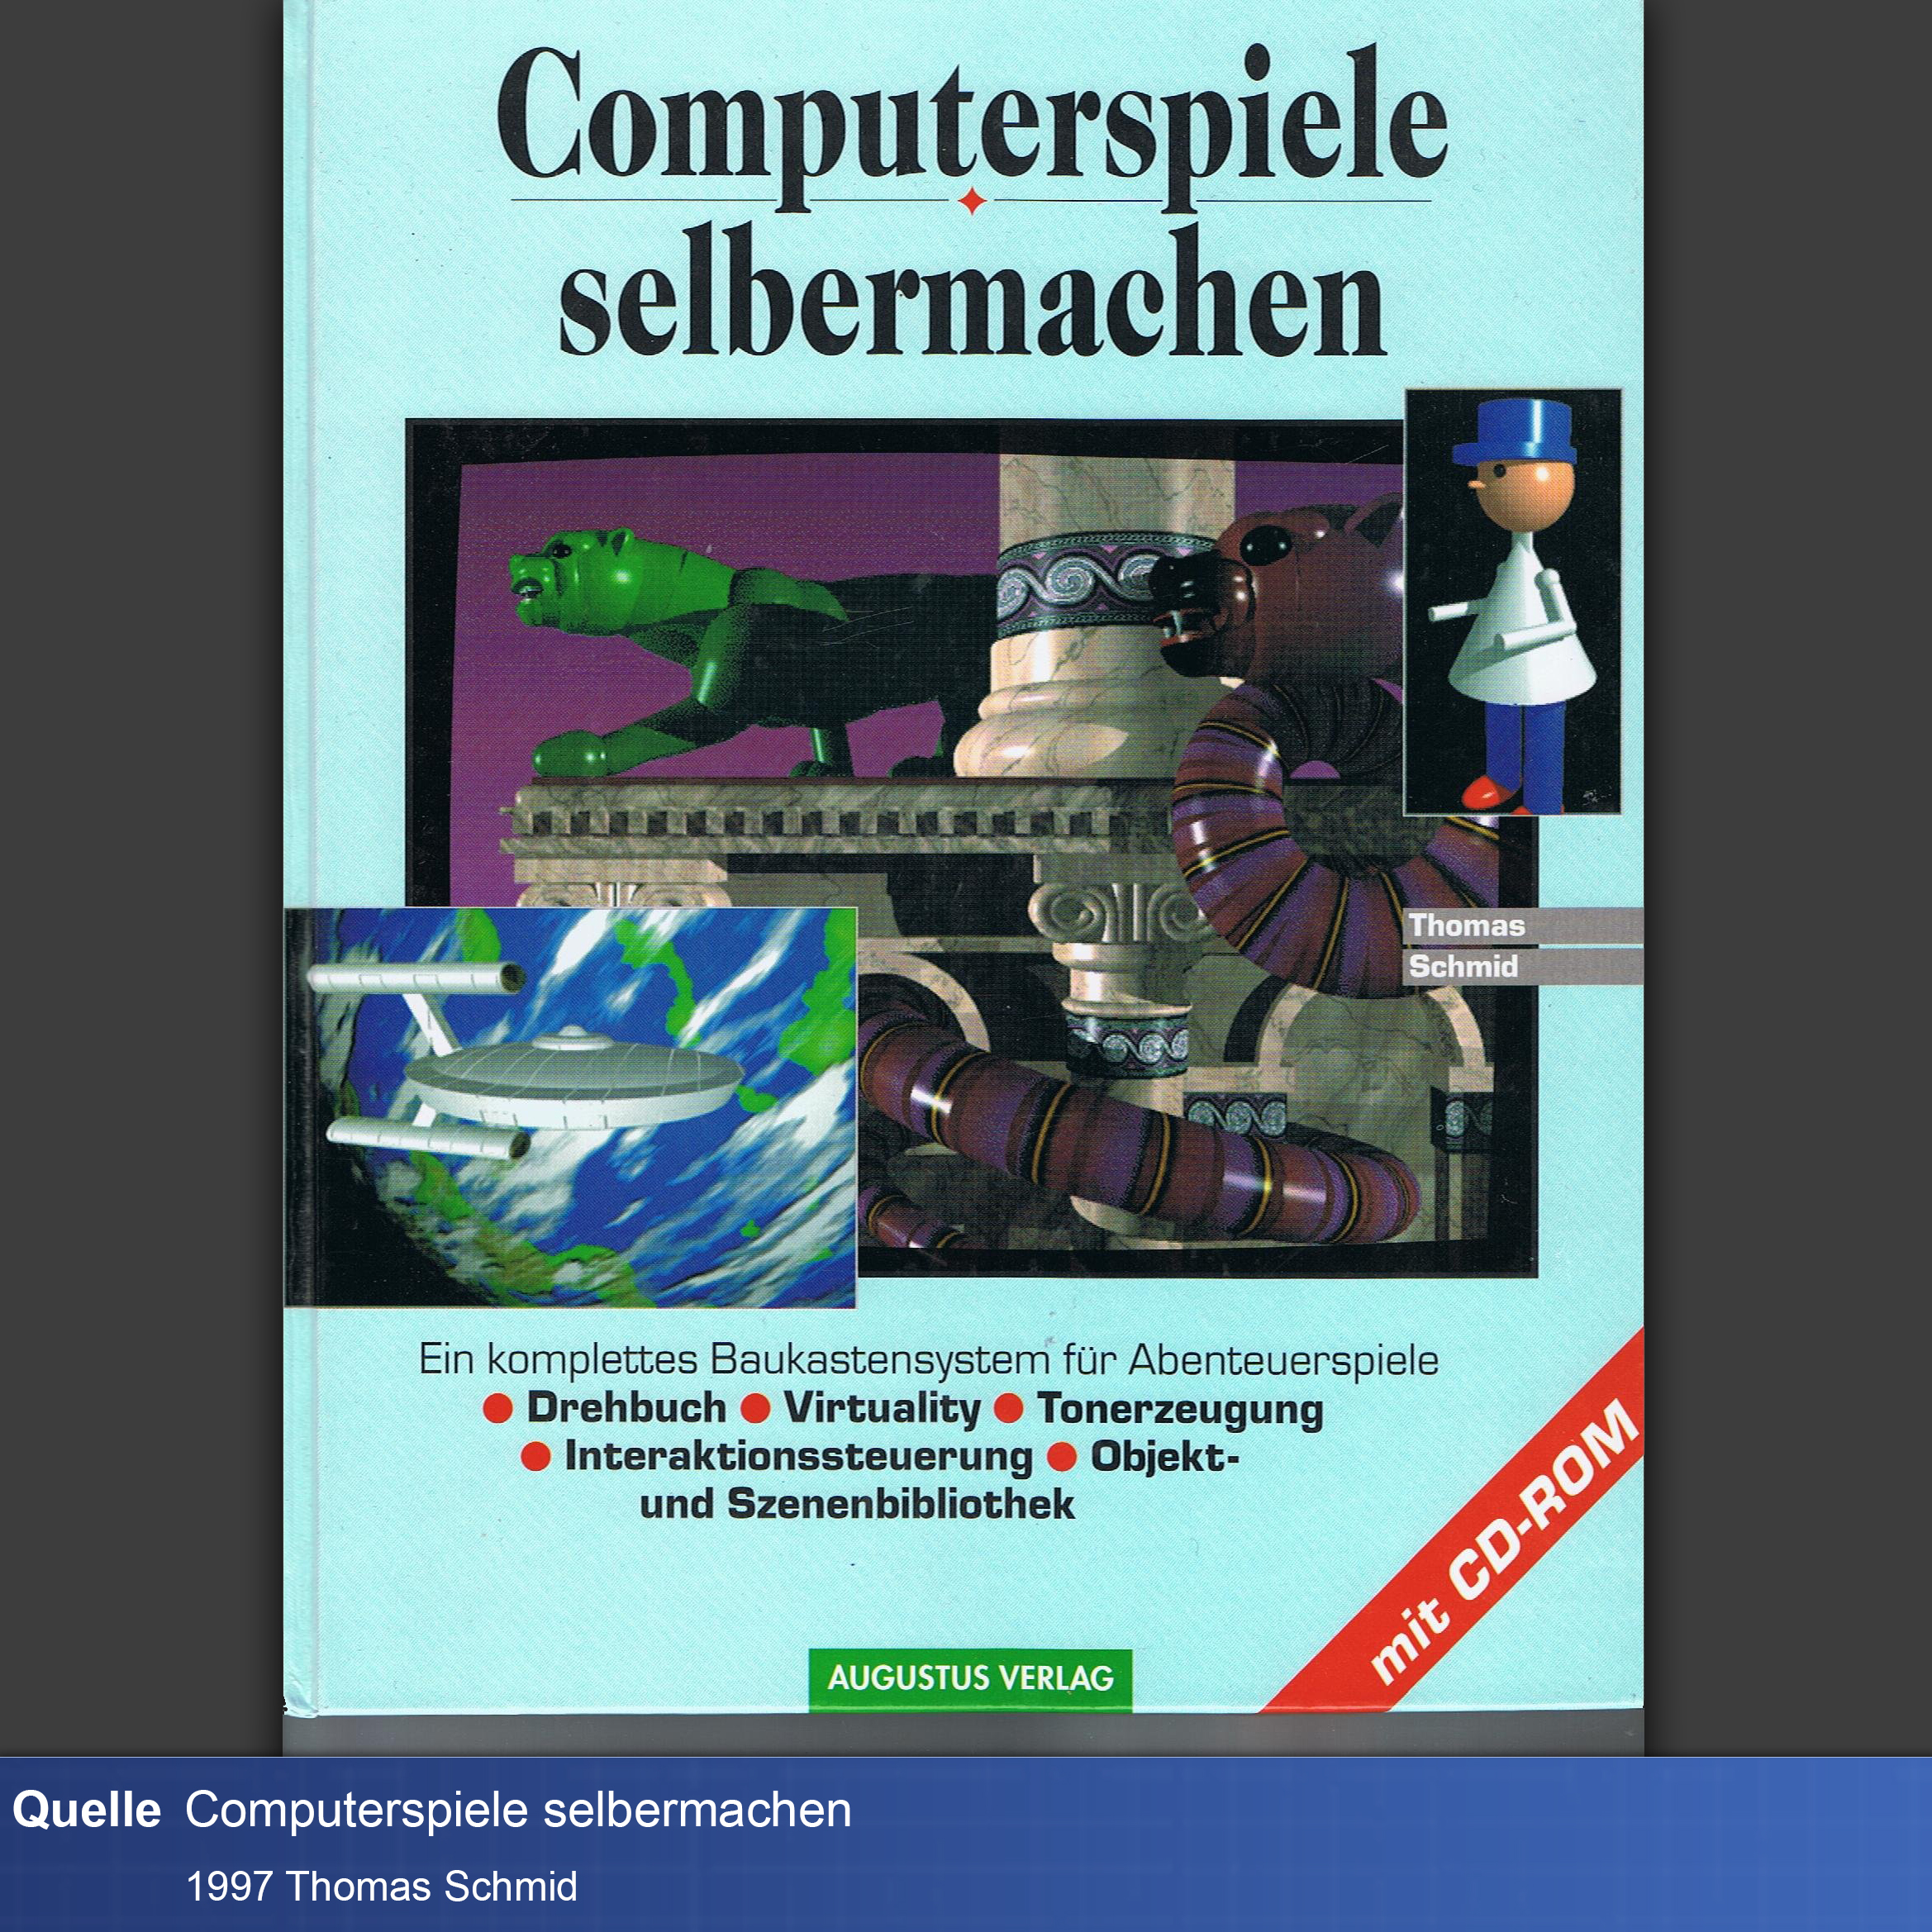 Buch-Cover mit frühen schlecht gealterten 3D Grafiken von einer Figur mit blauem Hut, einem Raumschiff ähnlich der Enterprise und einer violetten Schlange und einem grünen Panther die beide glänzen wie Plastik.